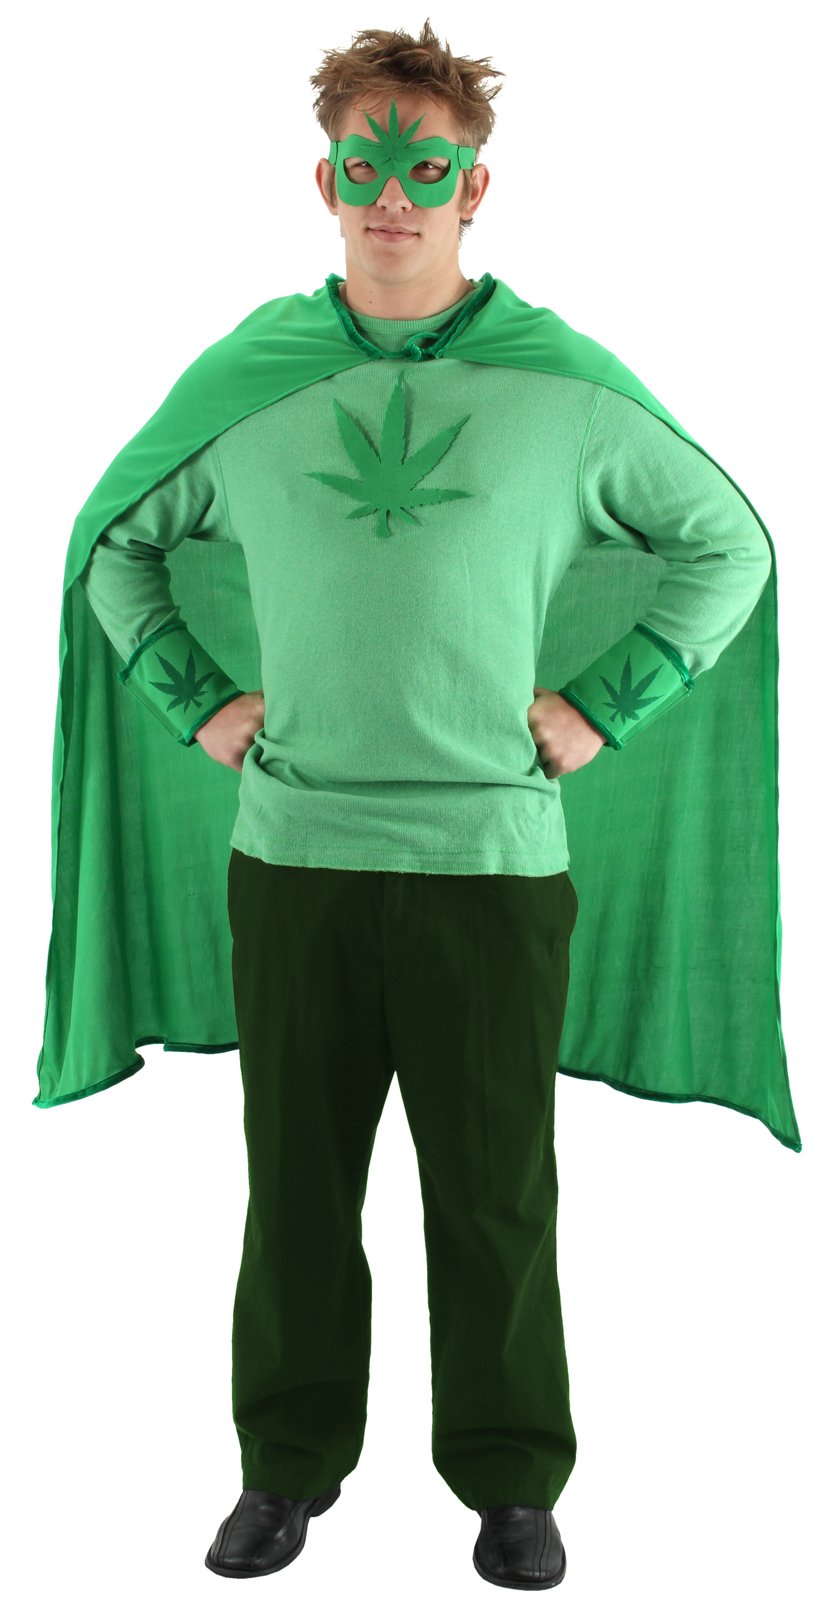 Weed Man Adult Costume Kit